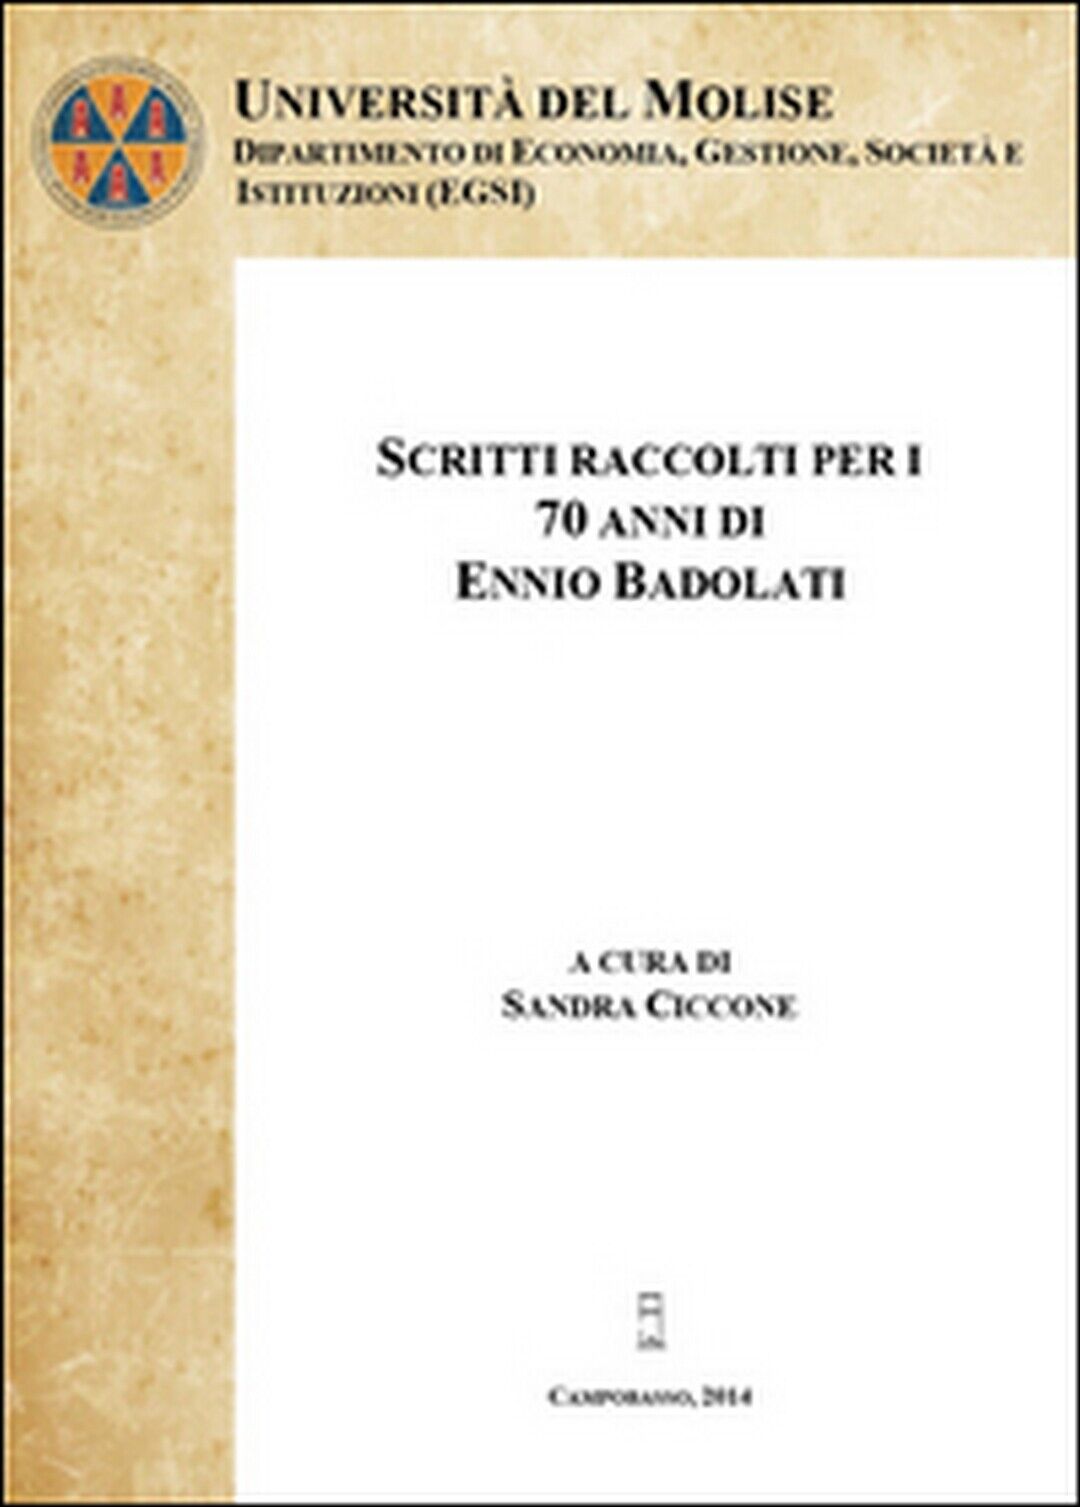 Scritti raccolti per i 70 anni di Ennio Badolati Vol.1 (Ciccone, 2014)